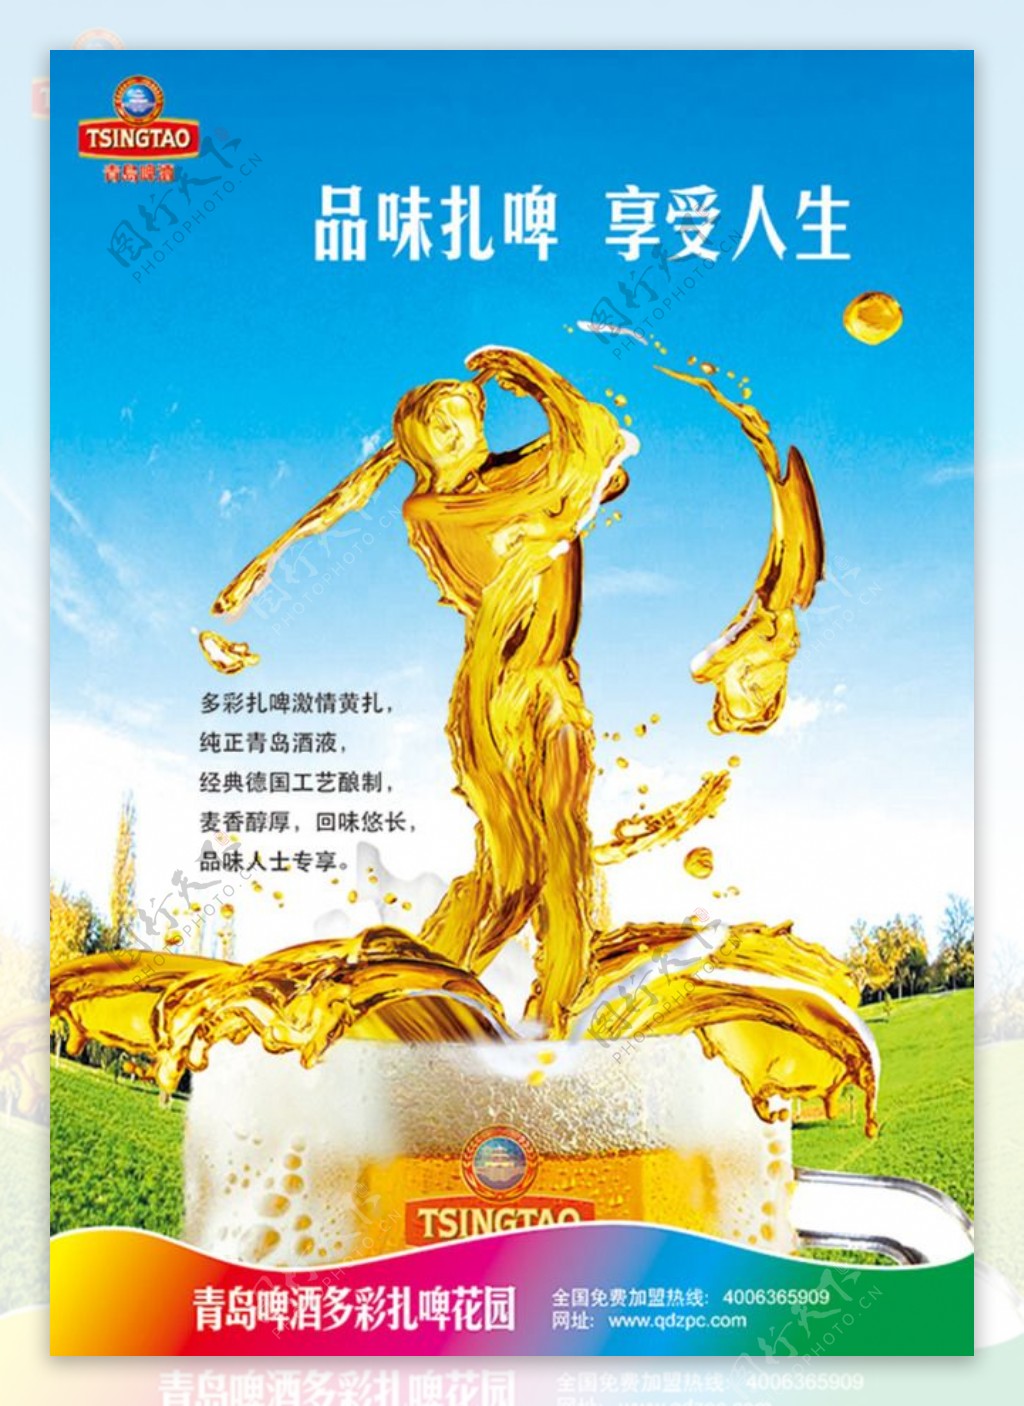 青岛啤酒宣传海报psd分层素材